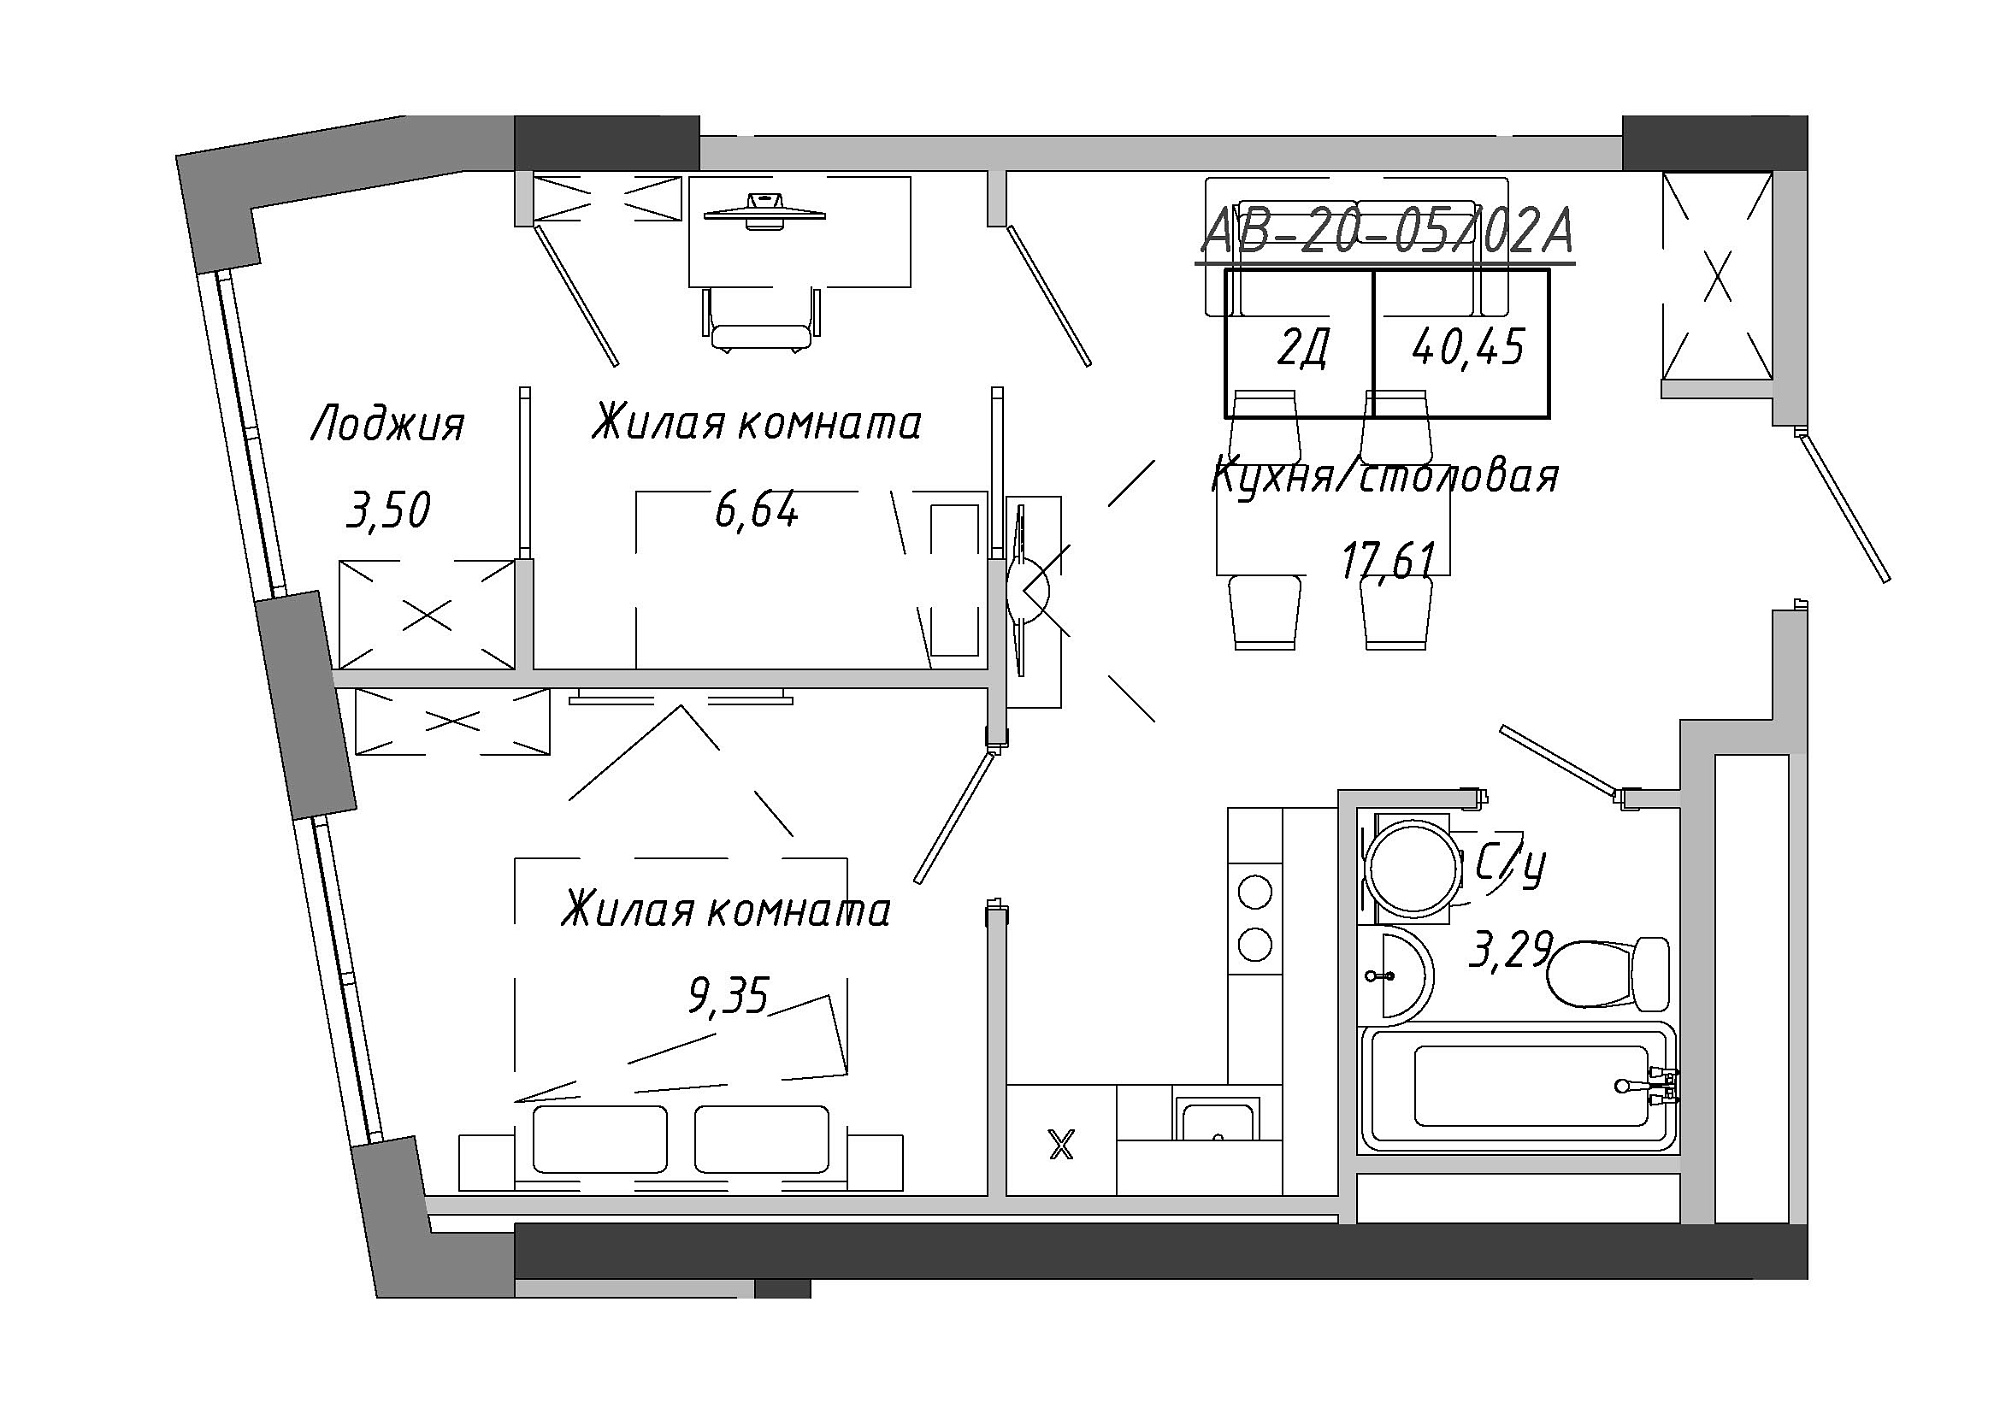 Планування 2-к квартира площею 41.9м2, AB-20-05/0002а.